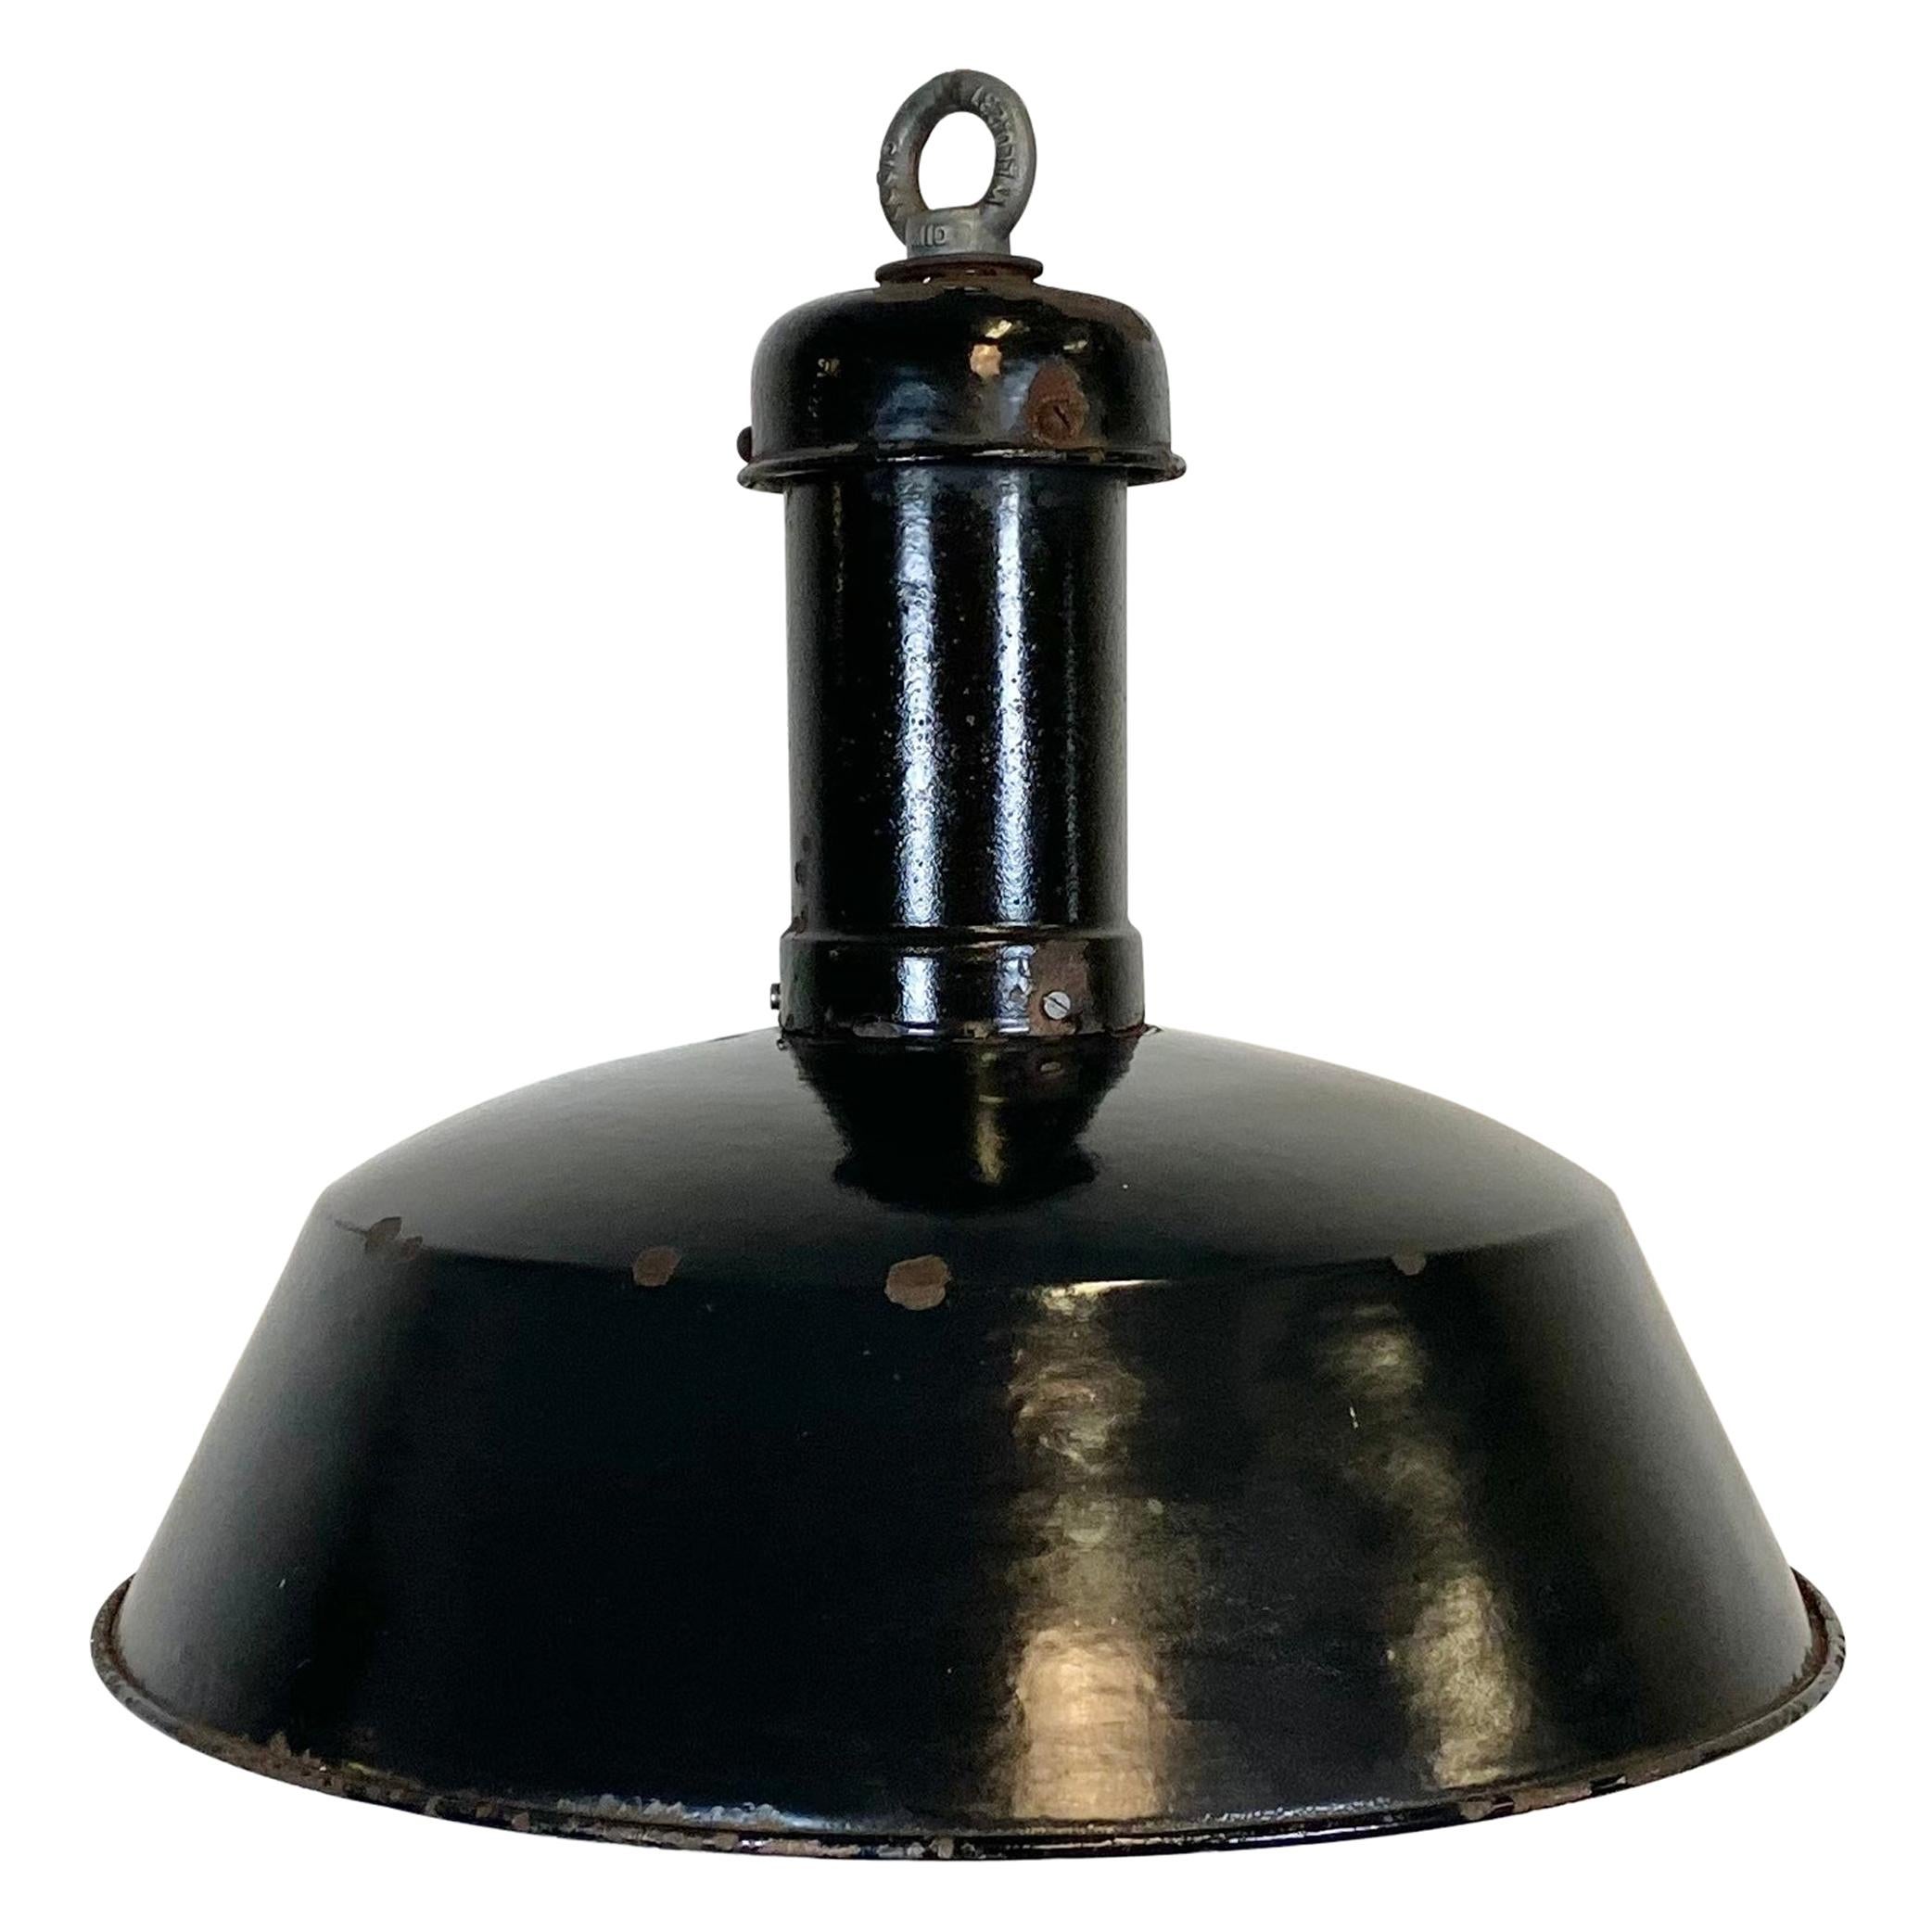 Lampe à suspension industrielle noire vintage, années 1930